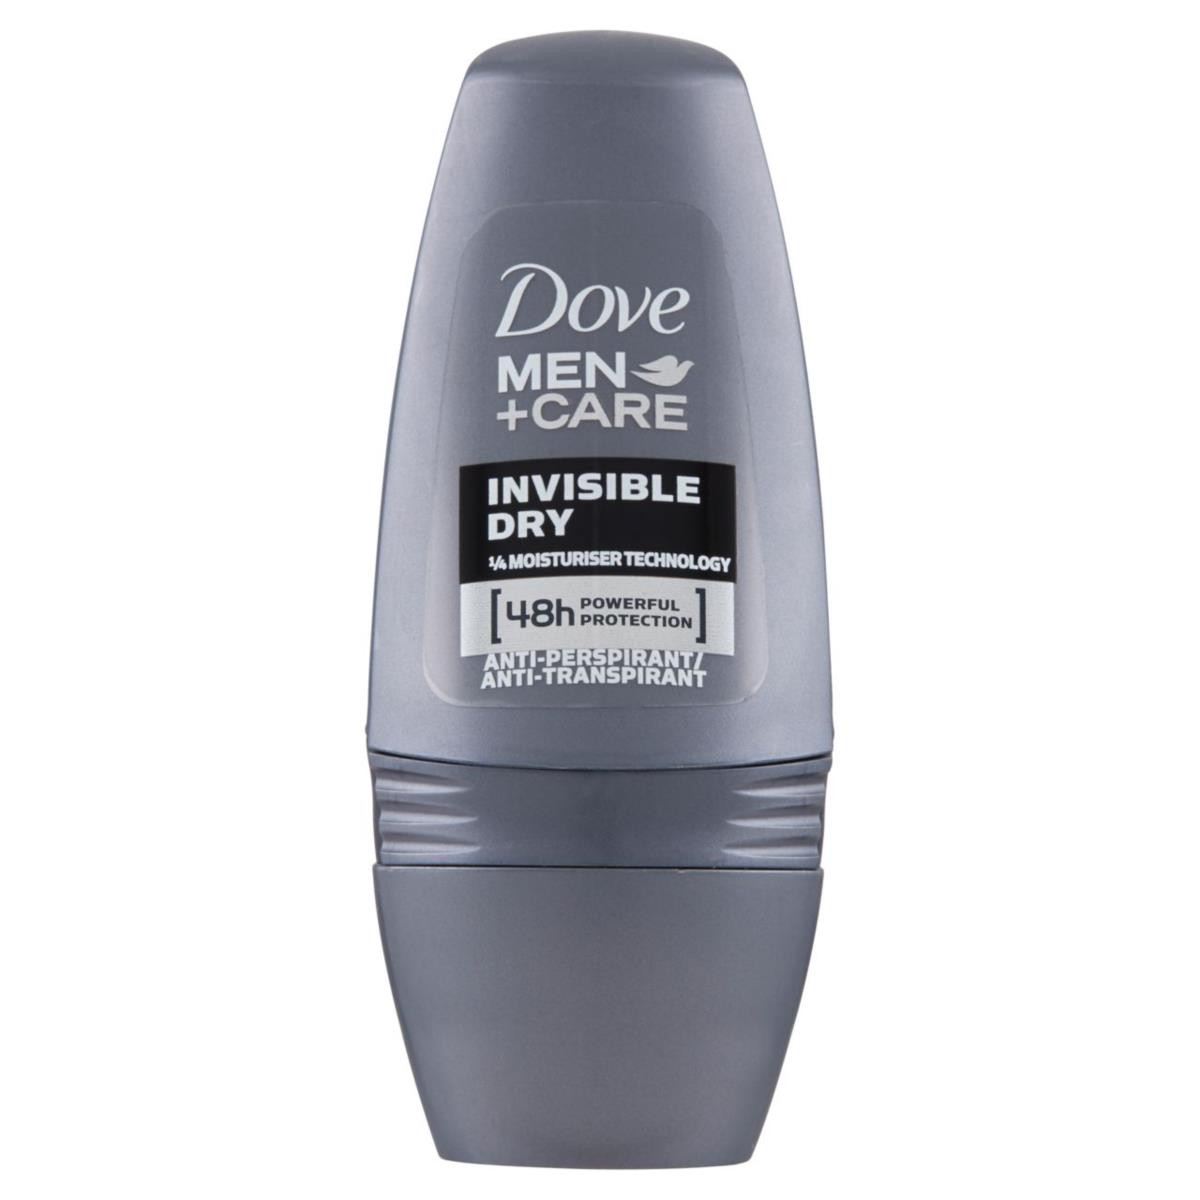 Dove deodorante Man+Care Invisible Dry Roll-on